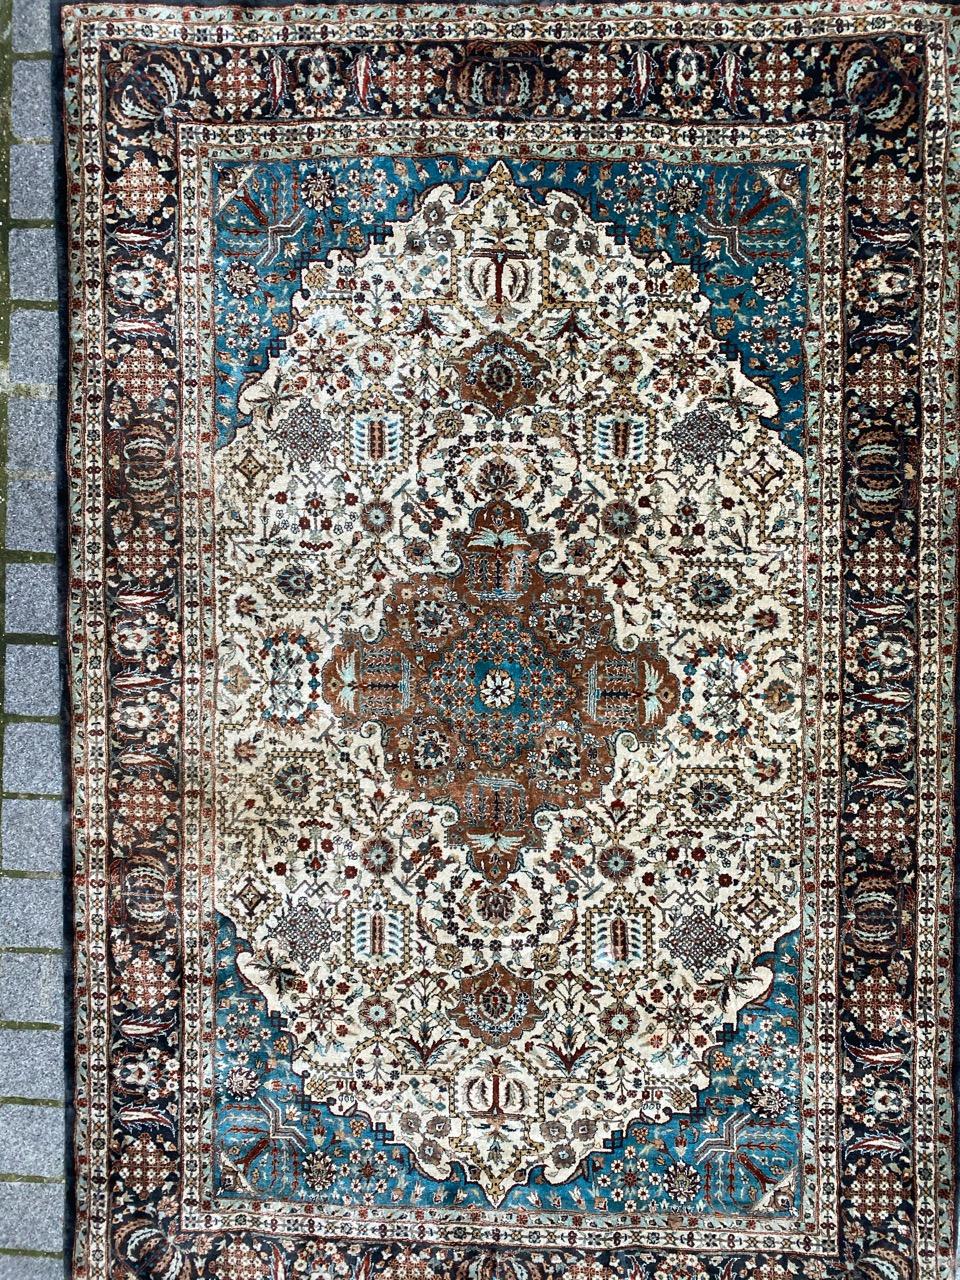 Wunderschöner Seidenteppich mit persischem Muster und schönen hellen Farben, komplett und sehr fein handgeknüpft mit Seidensamt auf Seidenfond.

✨✨✨
